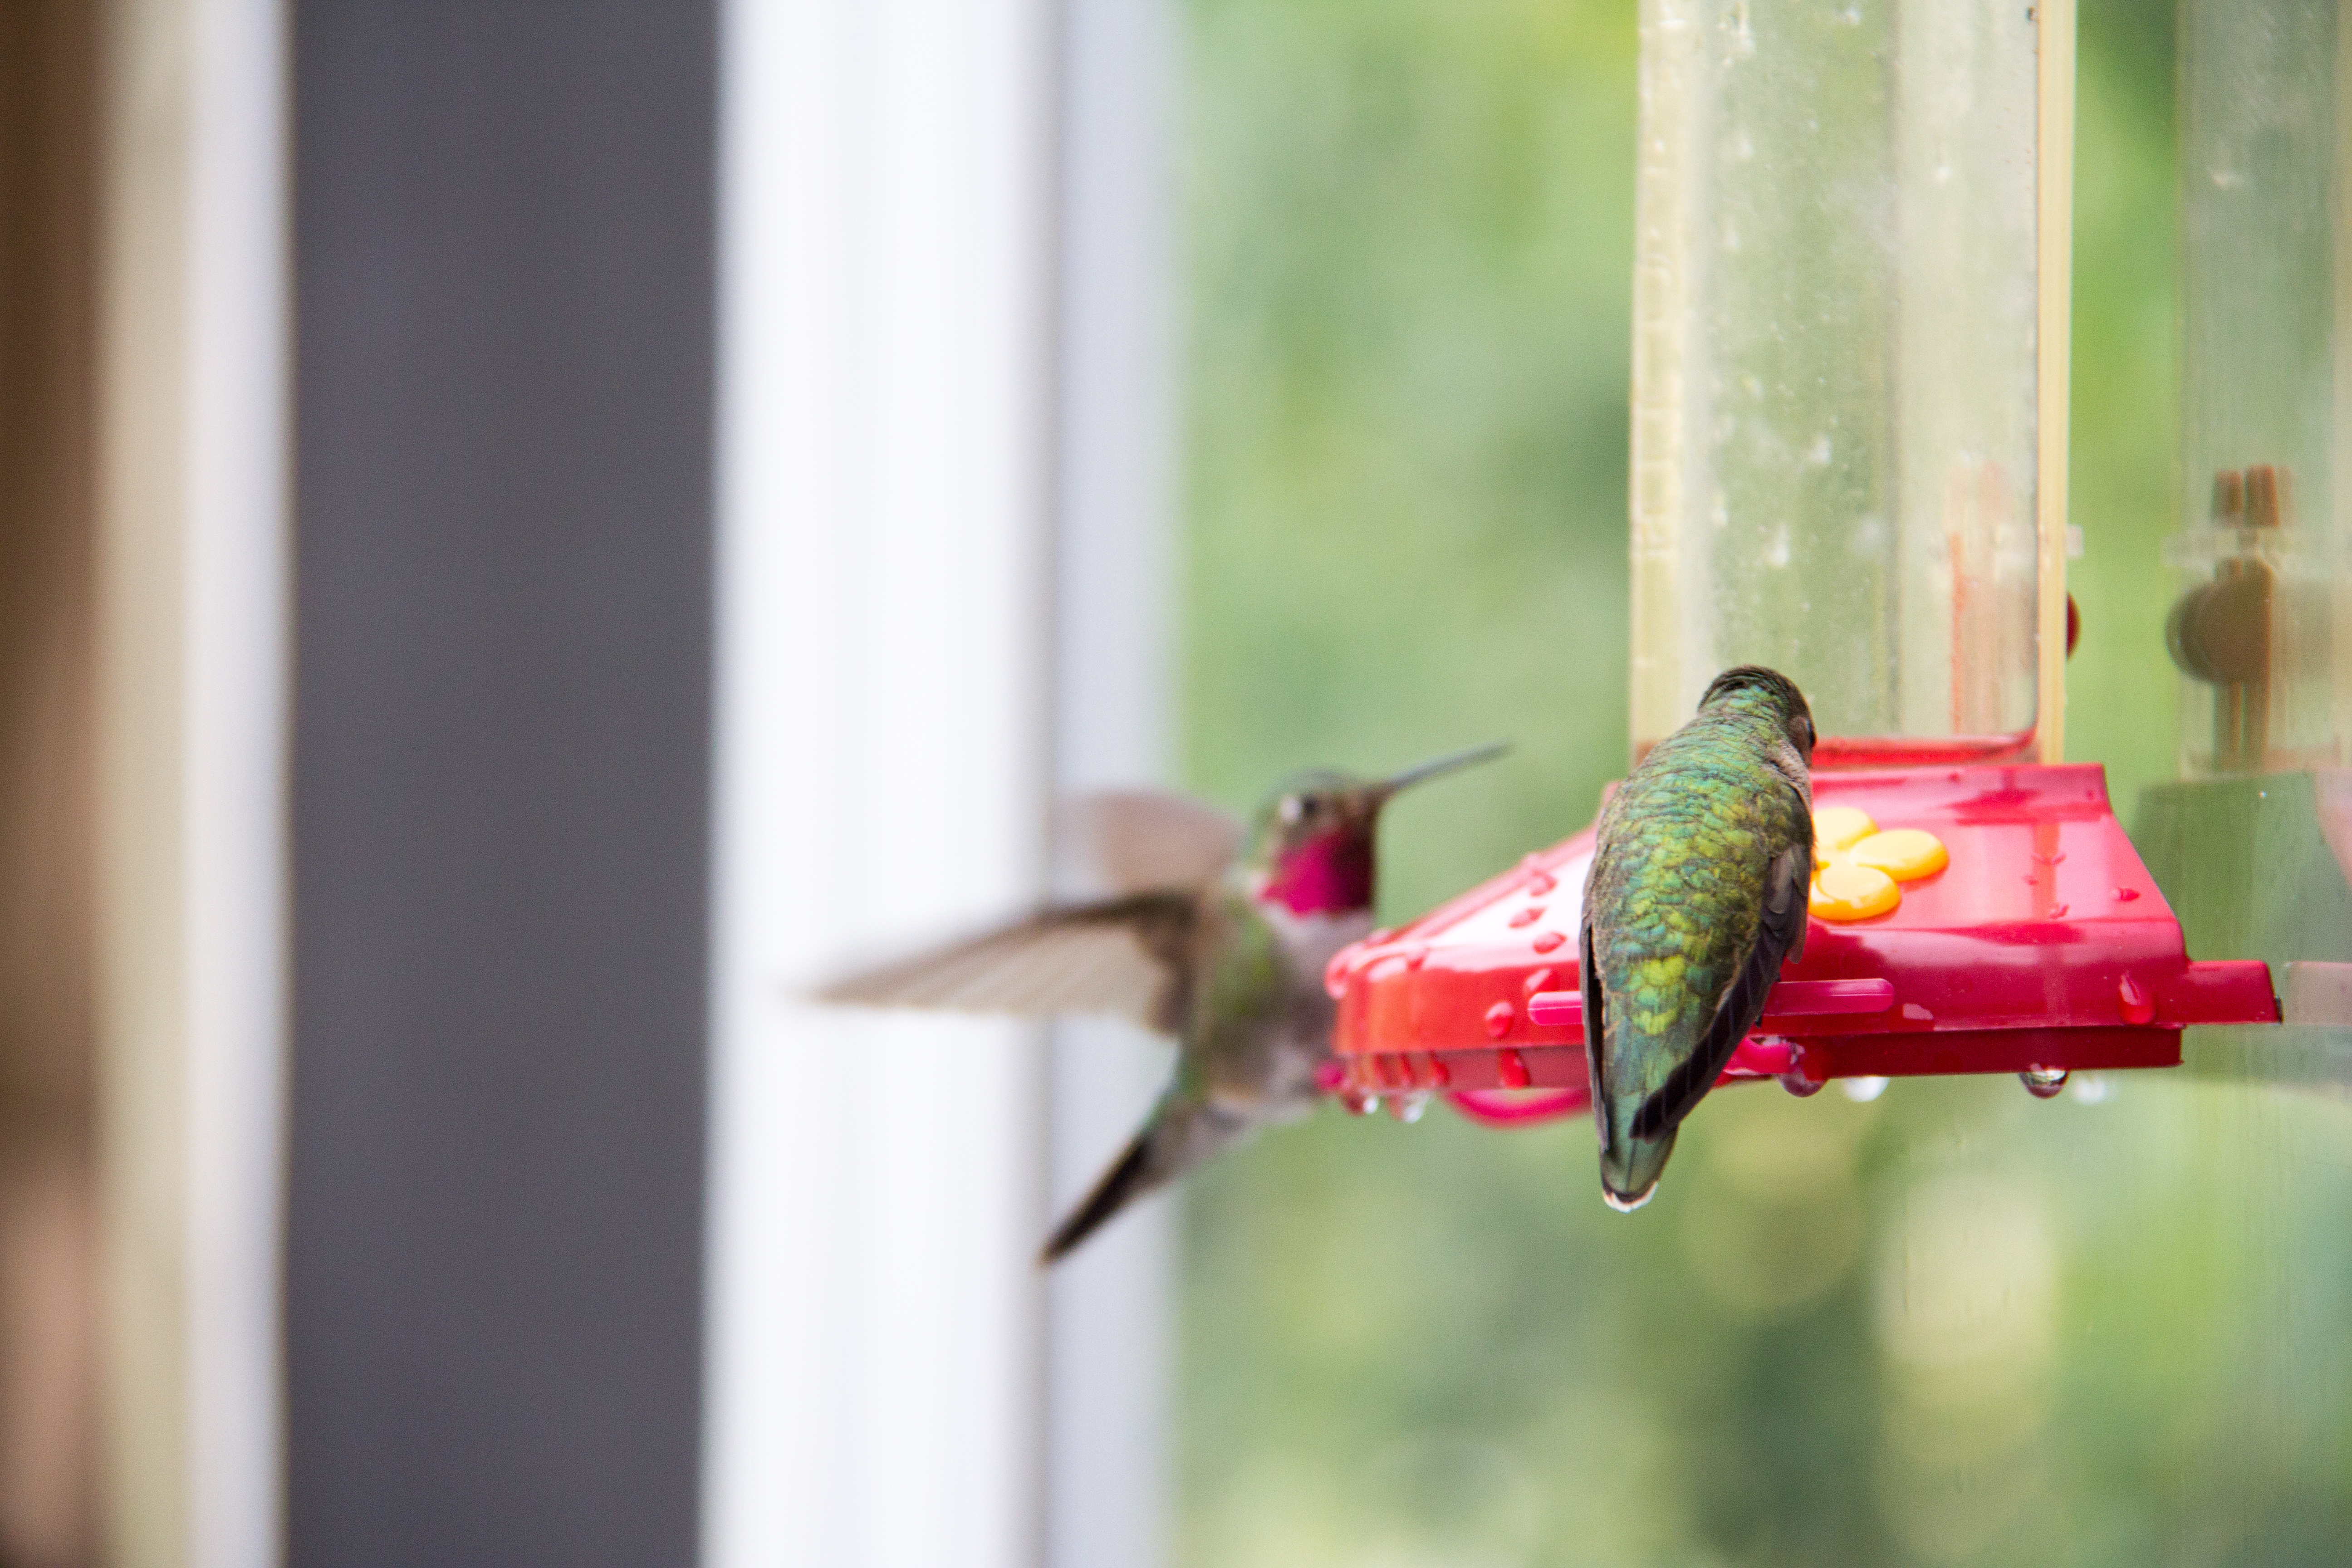 two humming birds at feeder, photo credit Ashography